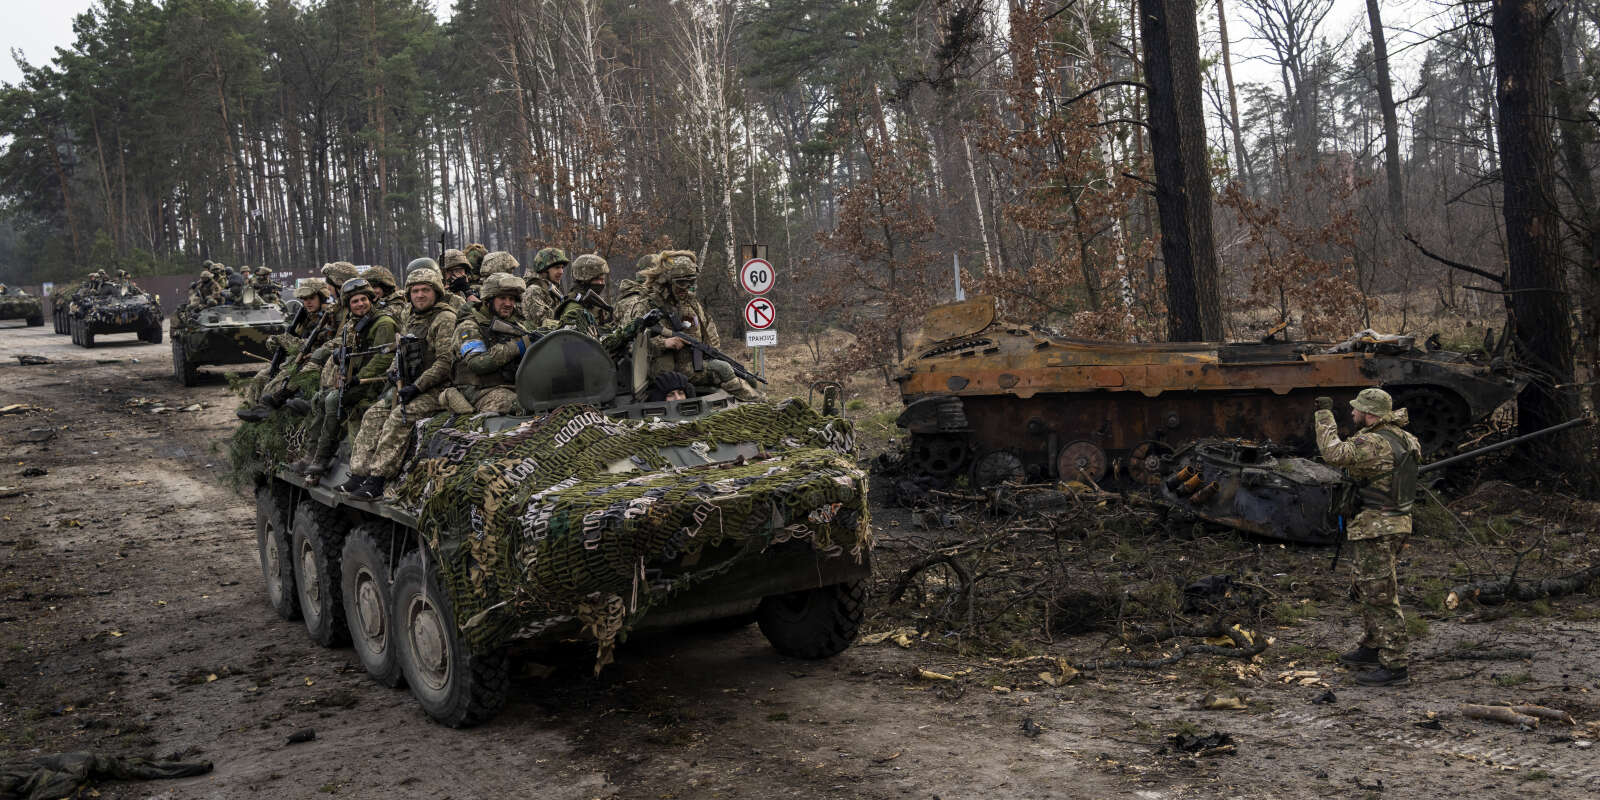 Des soldats ukrainiens sur un blindé passent devant un tank russe détruit, dans les faubourgs de Kiev, en Ukraine, le 22 mars 2022.